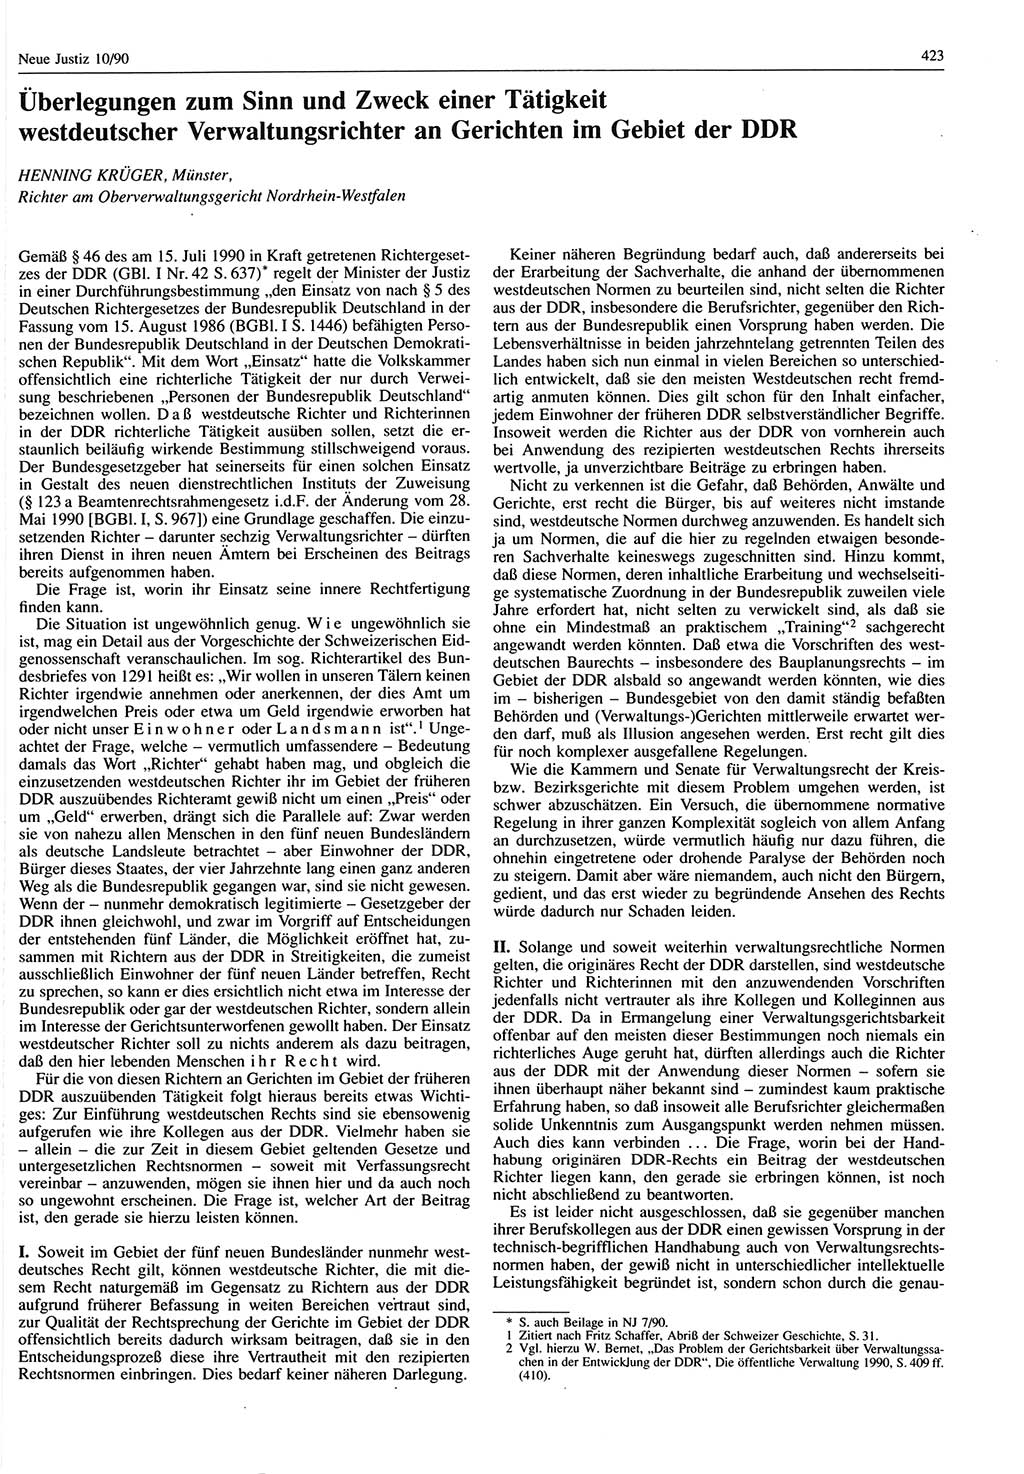 Neue Justiz (NJ), Zeitschrift für Rechtsetzung und Rechtsanwendung [Deutsche Demokratische Republik (DDR)], 44. Jahrgang 1990, Seite 423 (NJ DDR 1990, S. 423)